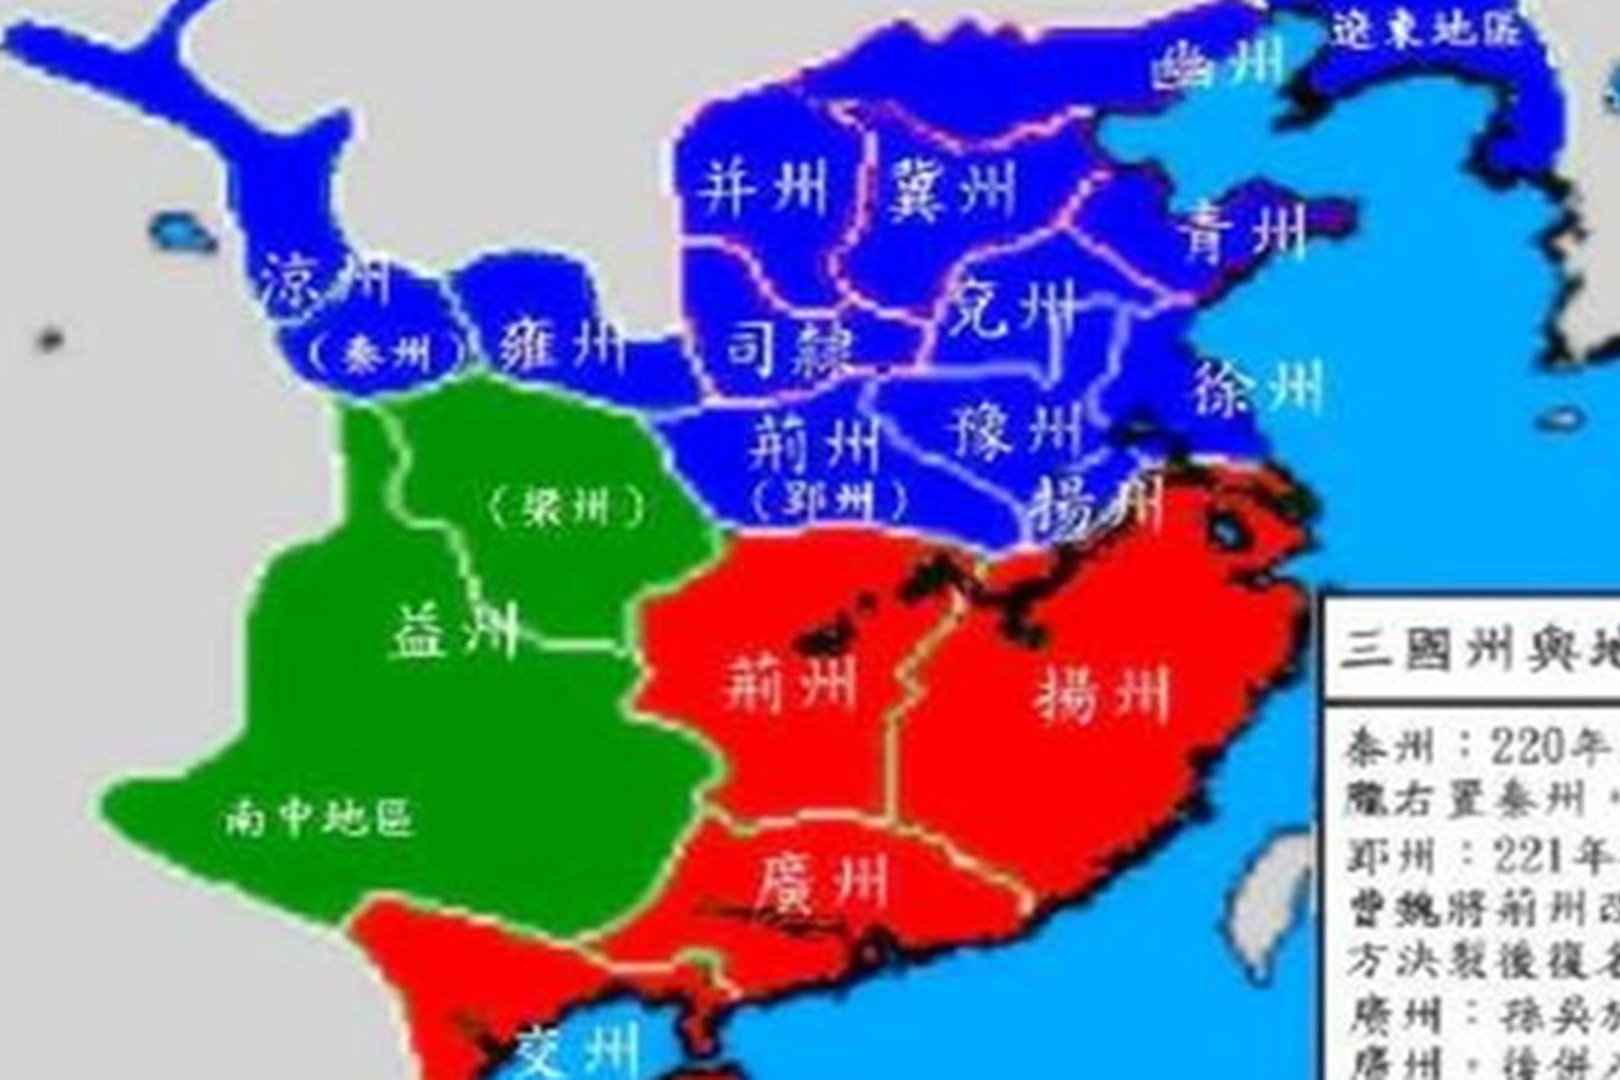 荆州到底是谁的一些史书说刘备借荆州这种说法缘何而起